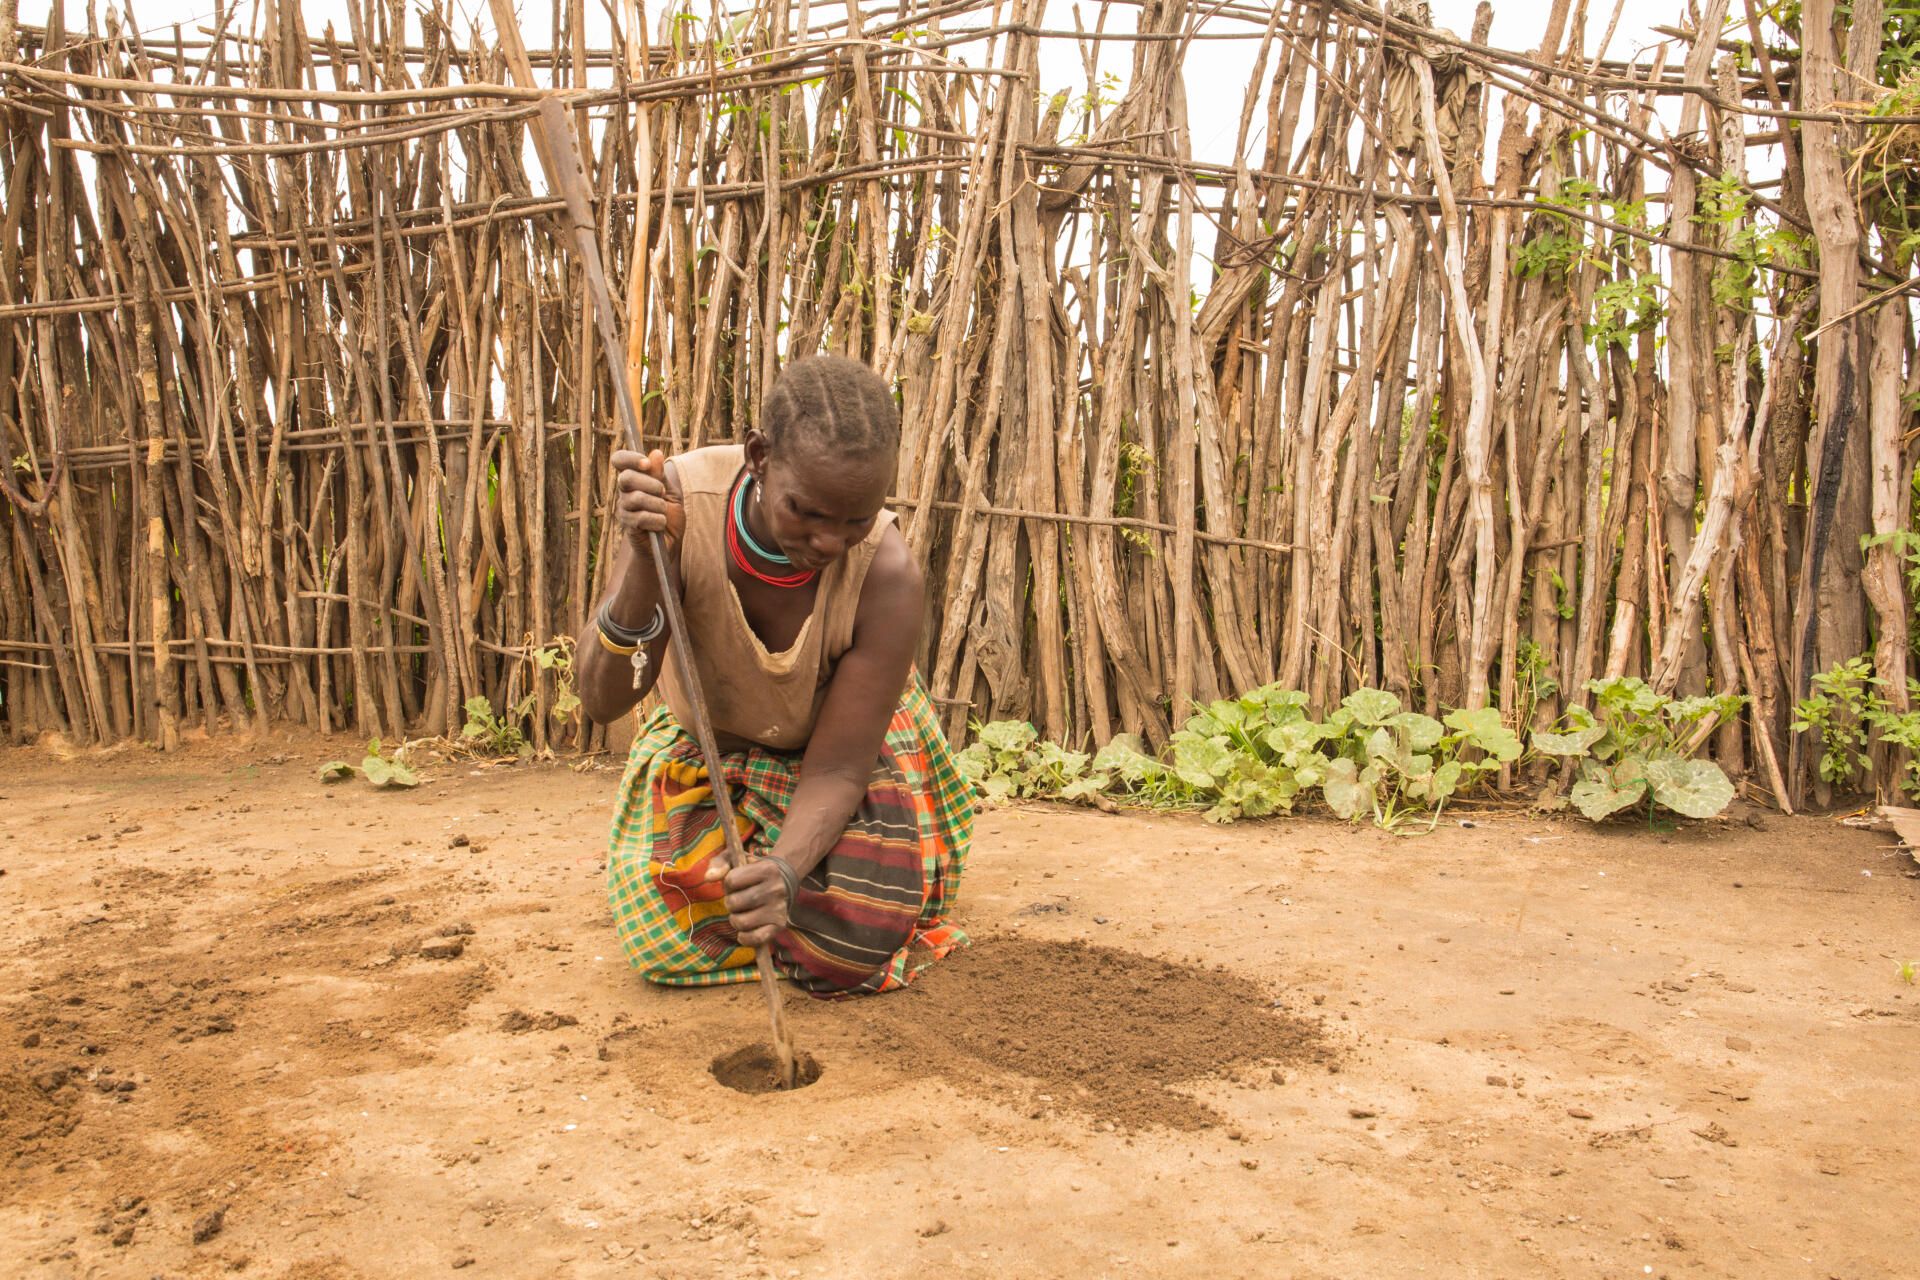 Dans la région du Karamoja, en Ouganda, Munyes, 44 ans, explique qu’elle creuse un trou dans la terre et s’assoit dessus. « C’est très pratique parce que ça coûte moins cher que des serviettes hygiéniques et que parfois on n’a pas le temps d’aller jusqu’à une boutique quand les règles commencent. Je ne veux pas courir et montrer aux autres mon sang, je préfère creuser ce trou et m’y asseoir. »